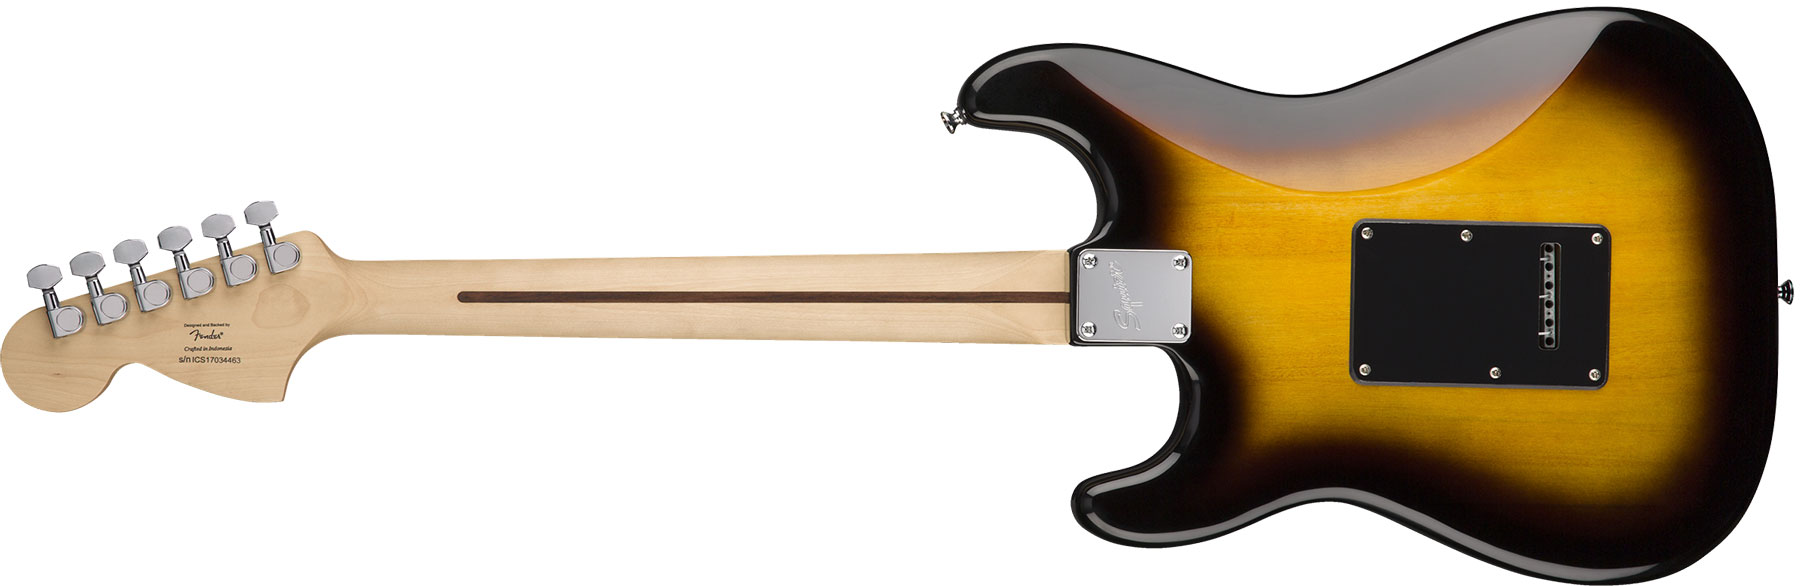 Squier Strat Affinity Hss Pack +fender Frontman 15g Trem Lau - Brown Sunburst - Pack Guitare Électrique - Variation 2